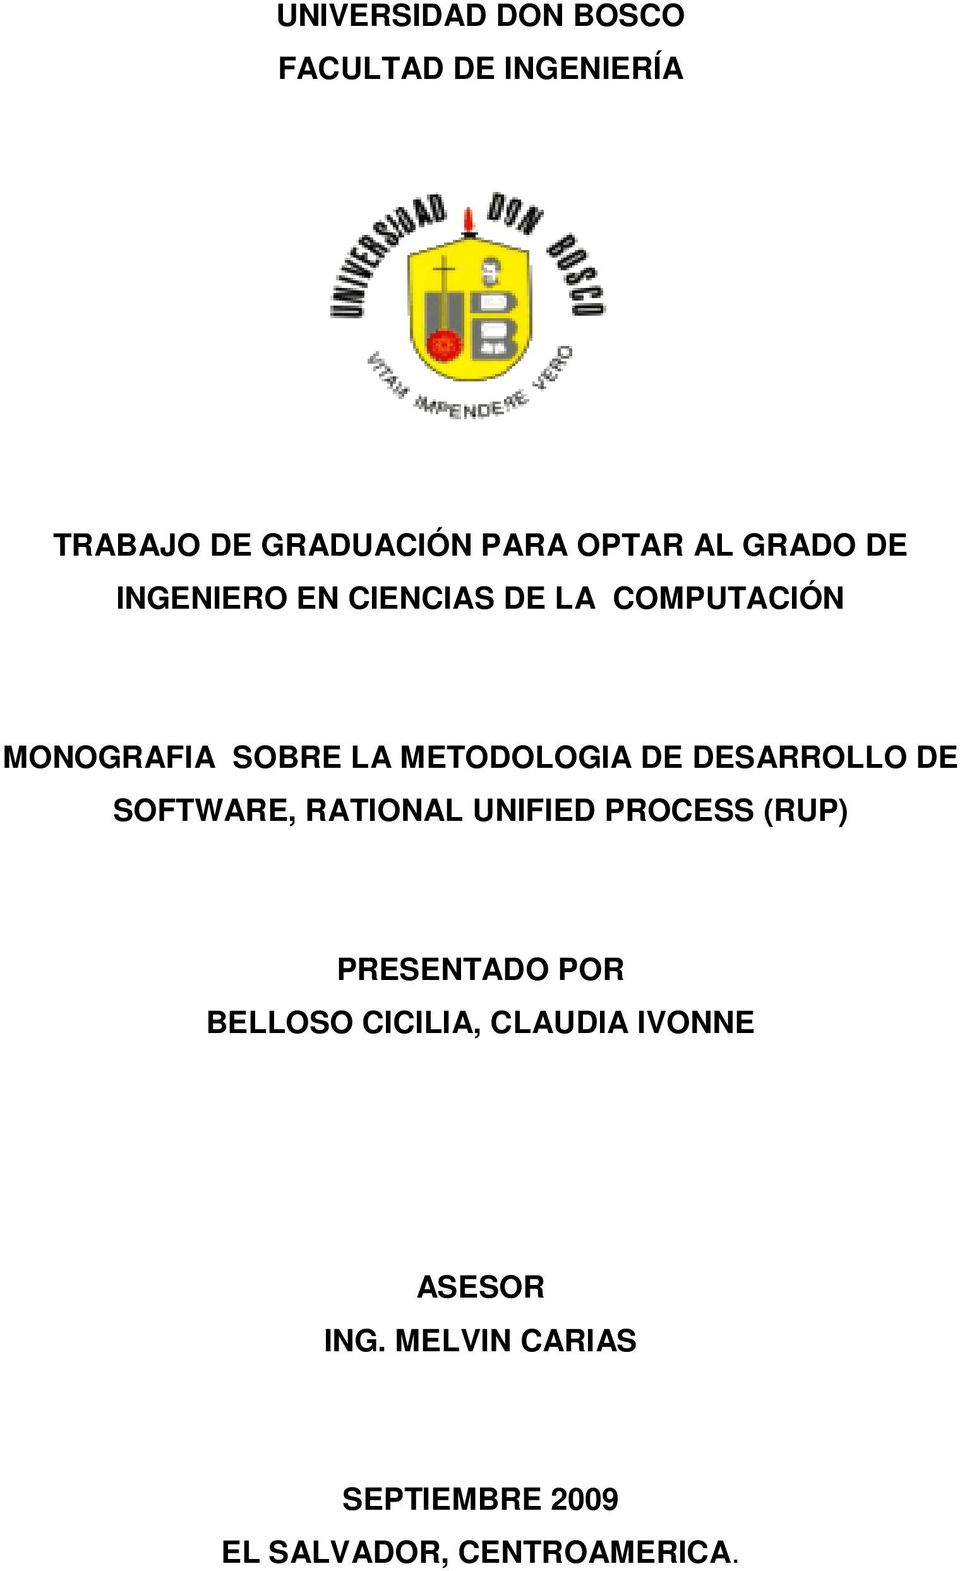 DESARROLLO DE SOFTWARE, RATIONAL UNIFIED PROCESS (RUP) PRESENTADO POR BELLOSO